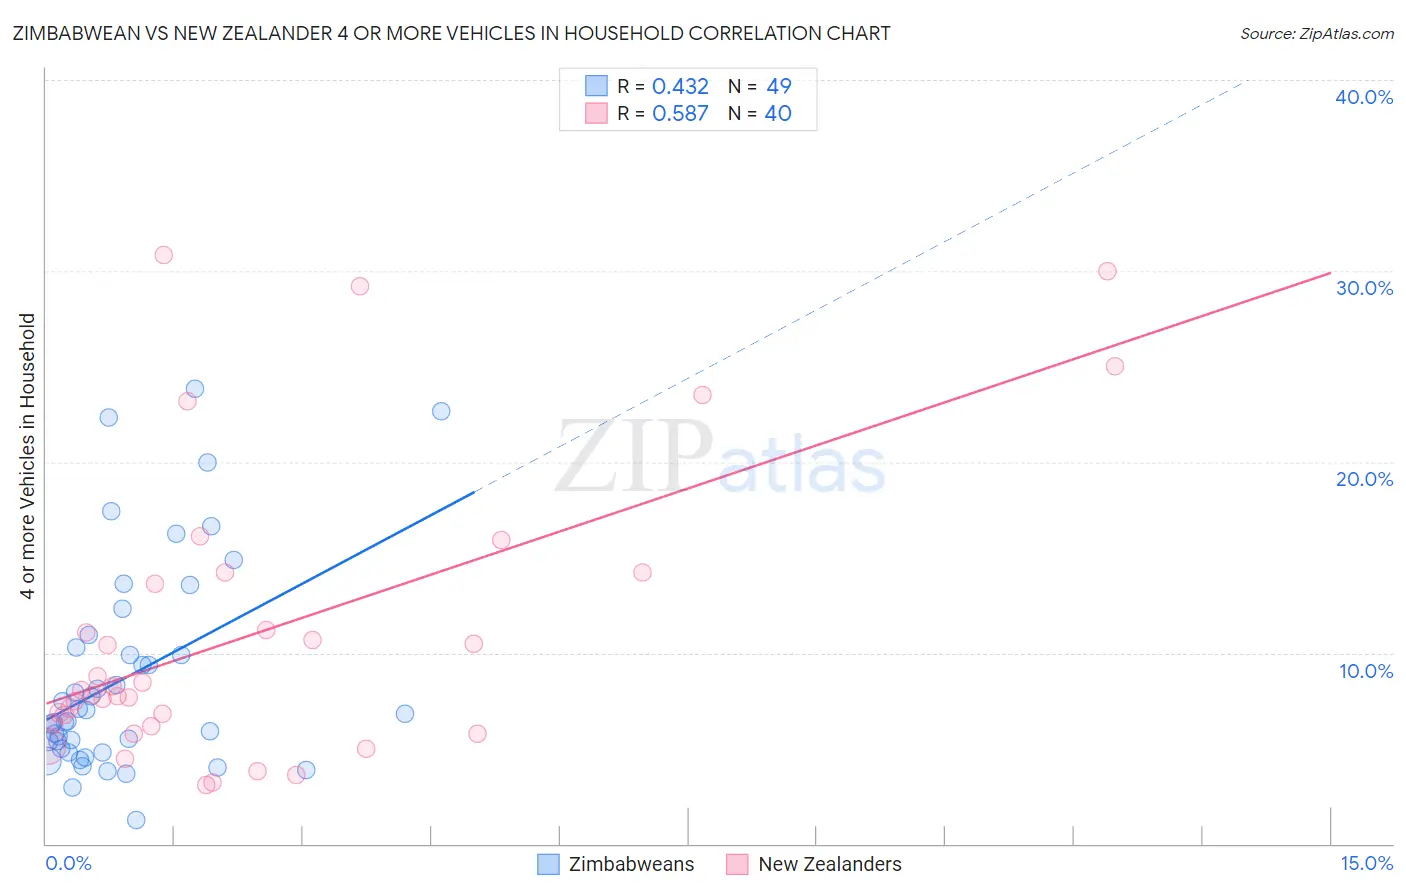 Zimbabwean vs New Zealander 4 or more Vehicles in Household